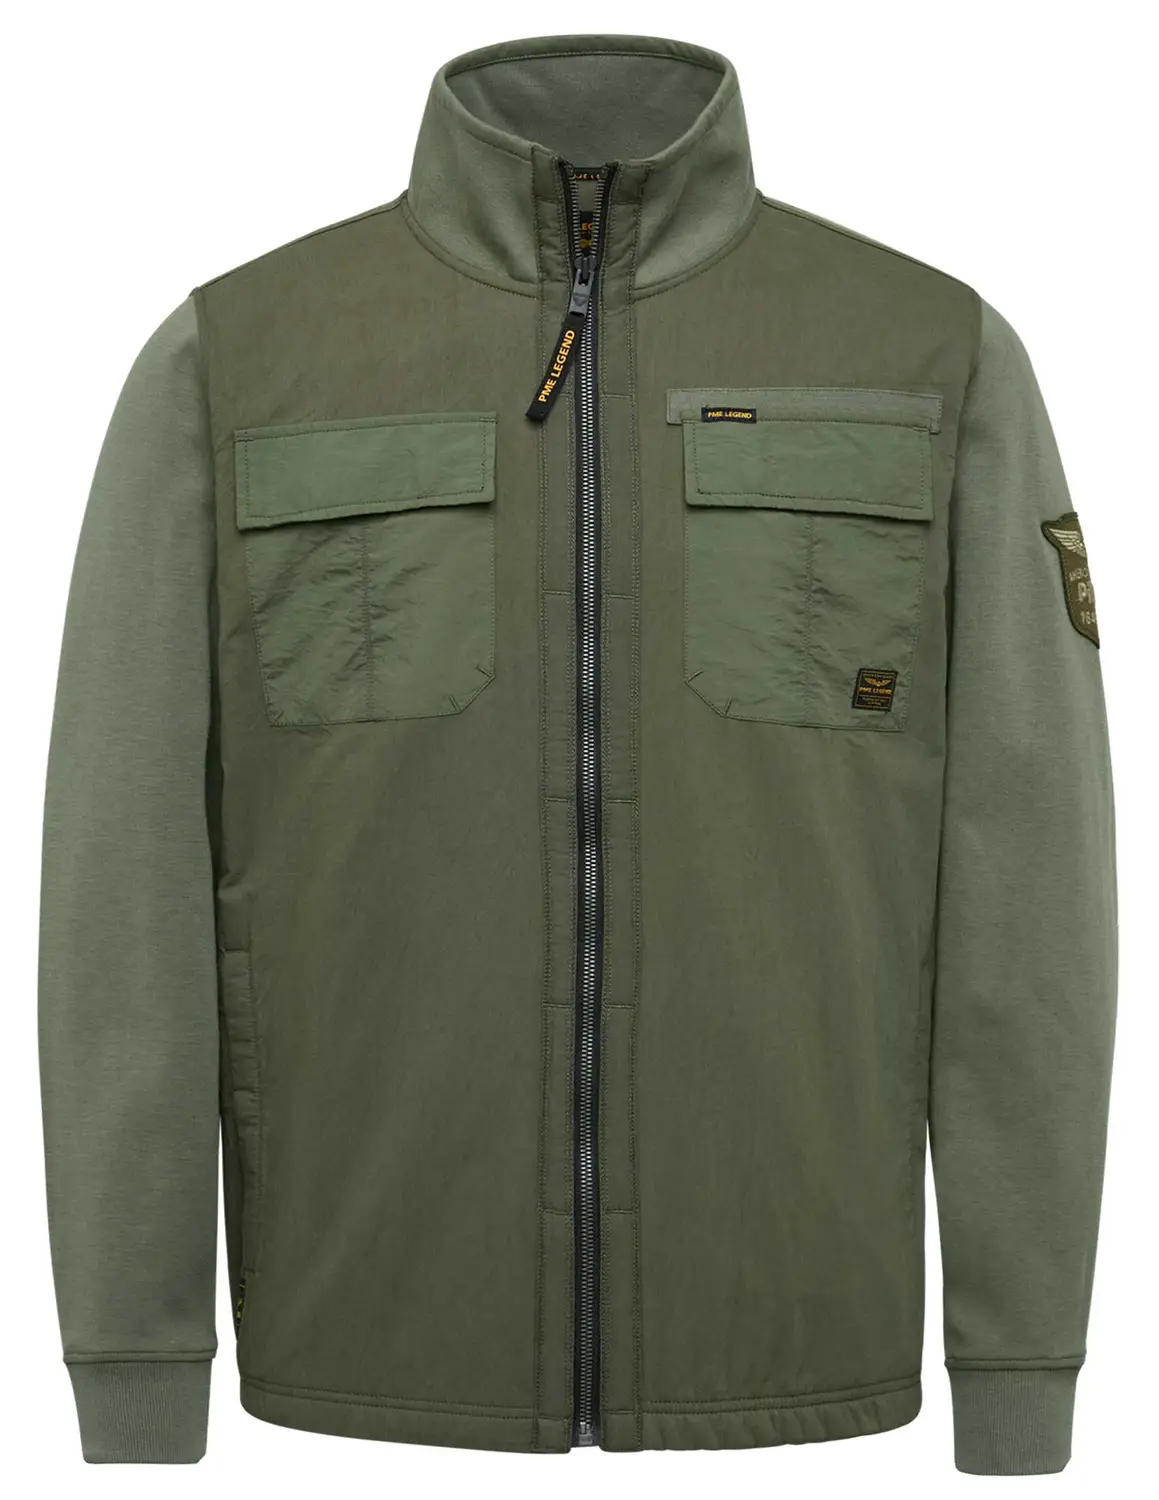 PME Legend Zip jacket Cargo interlock PSW2302414 groen kopen bij The